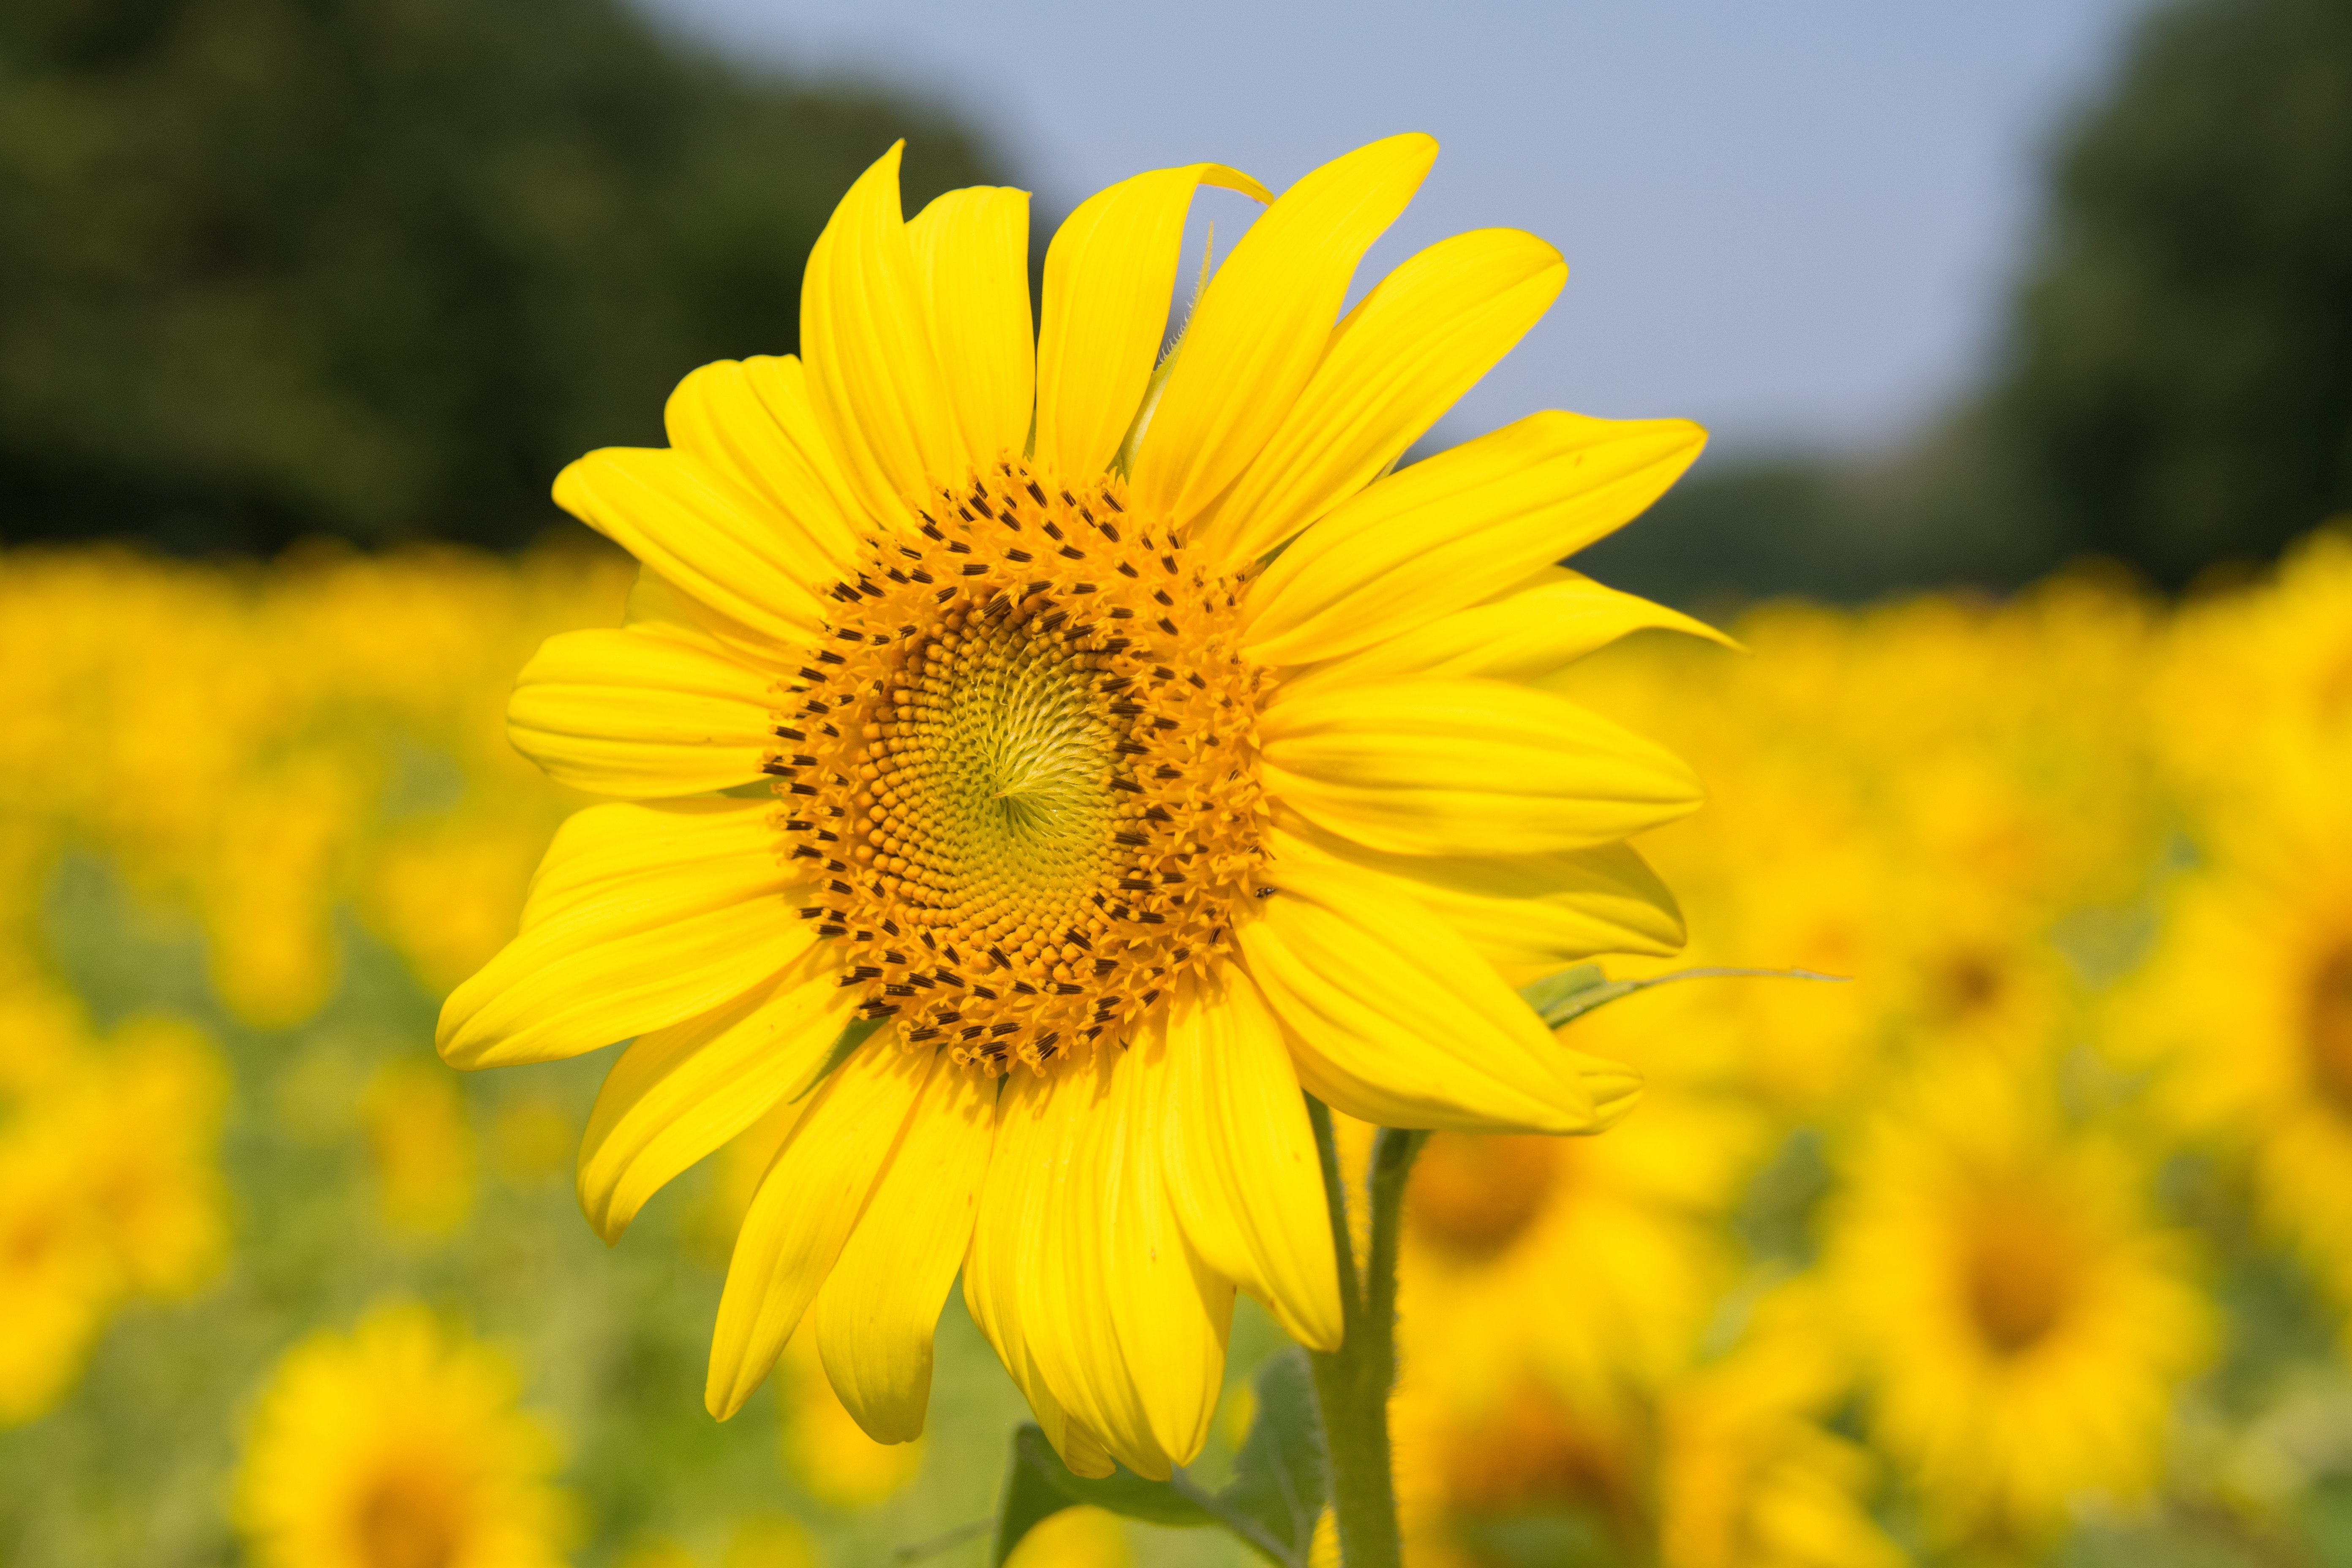 Best Sunflower Photo · 100% Free Downloads